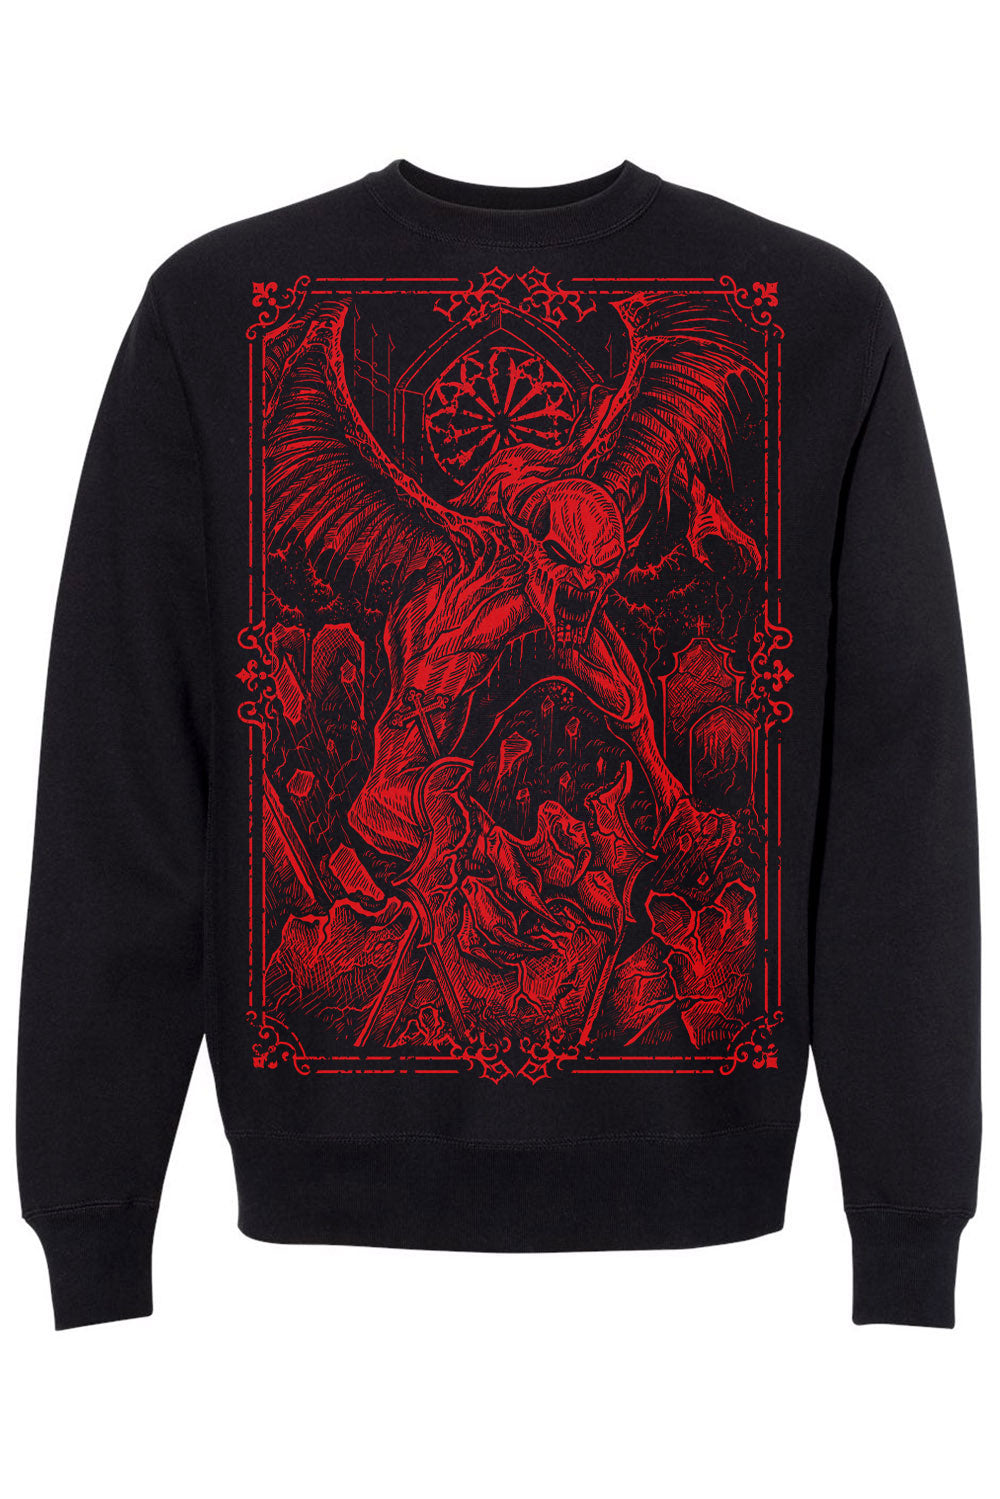 womens gothic monster sweatshirt